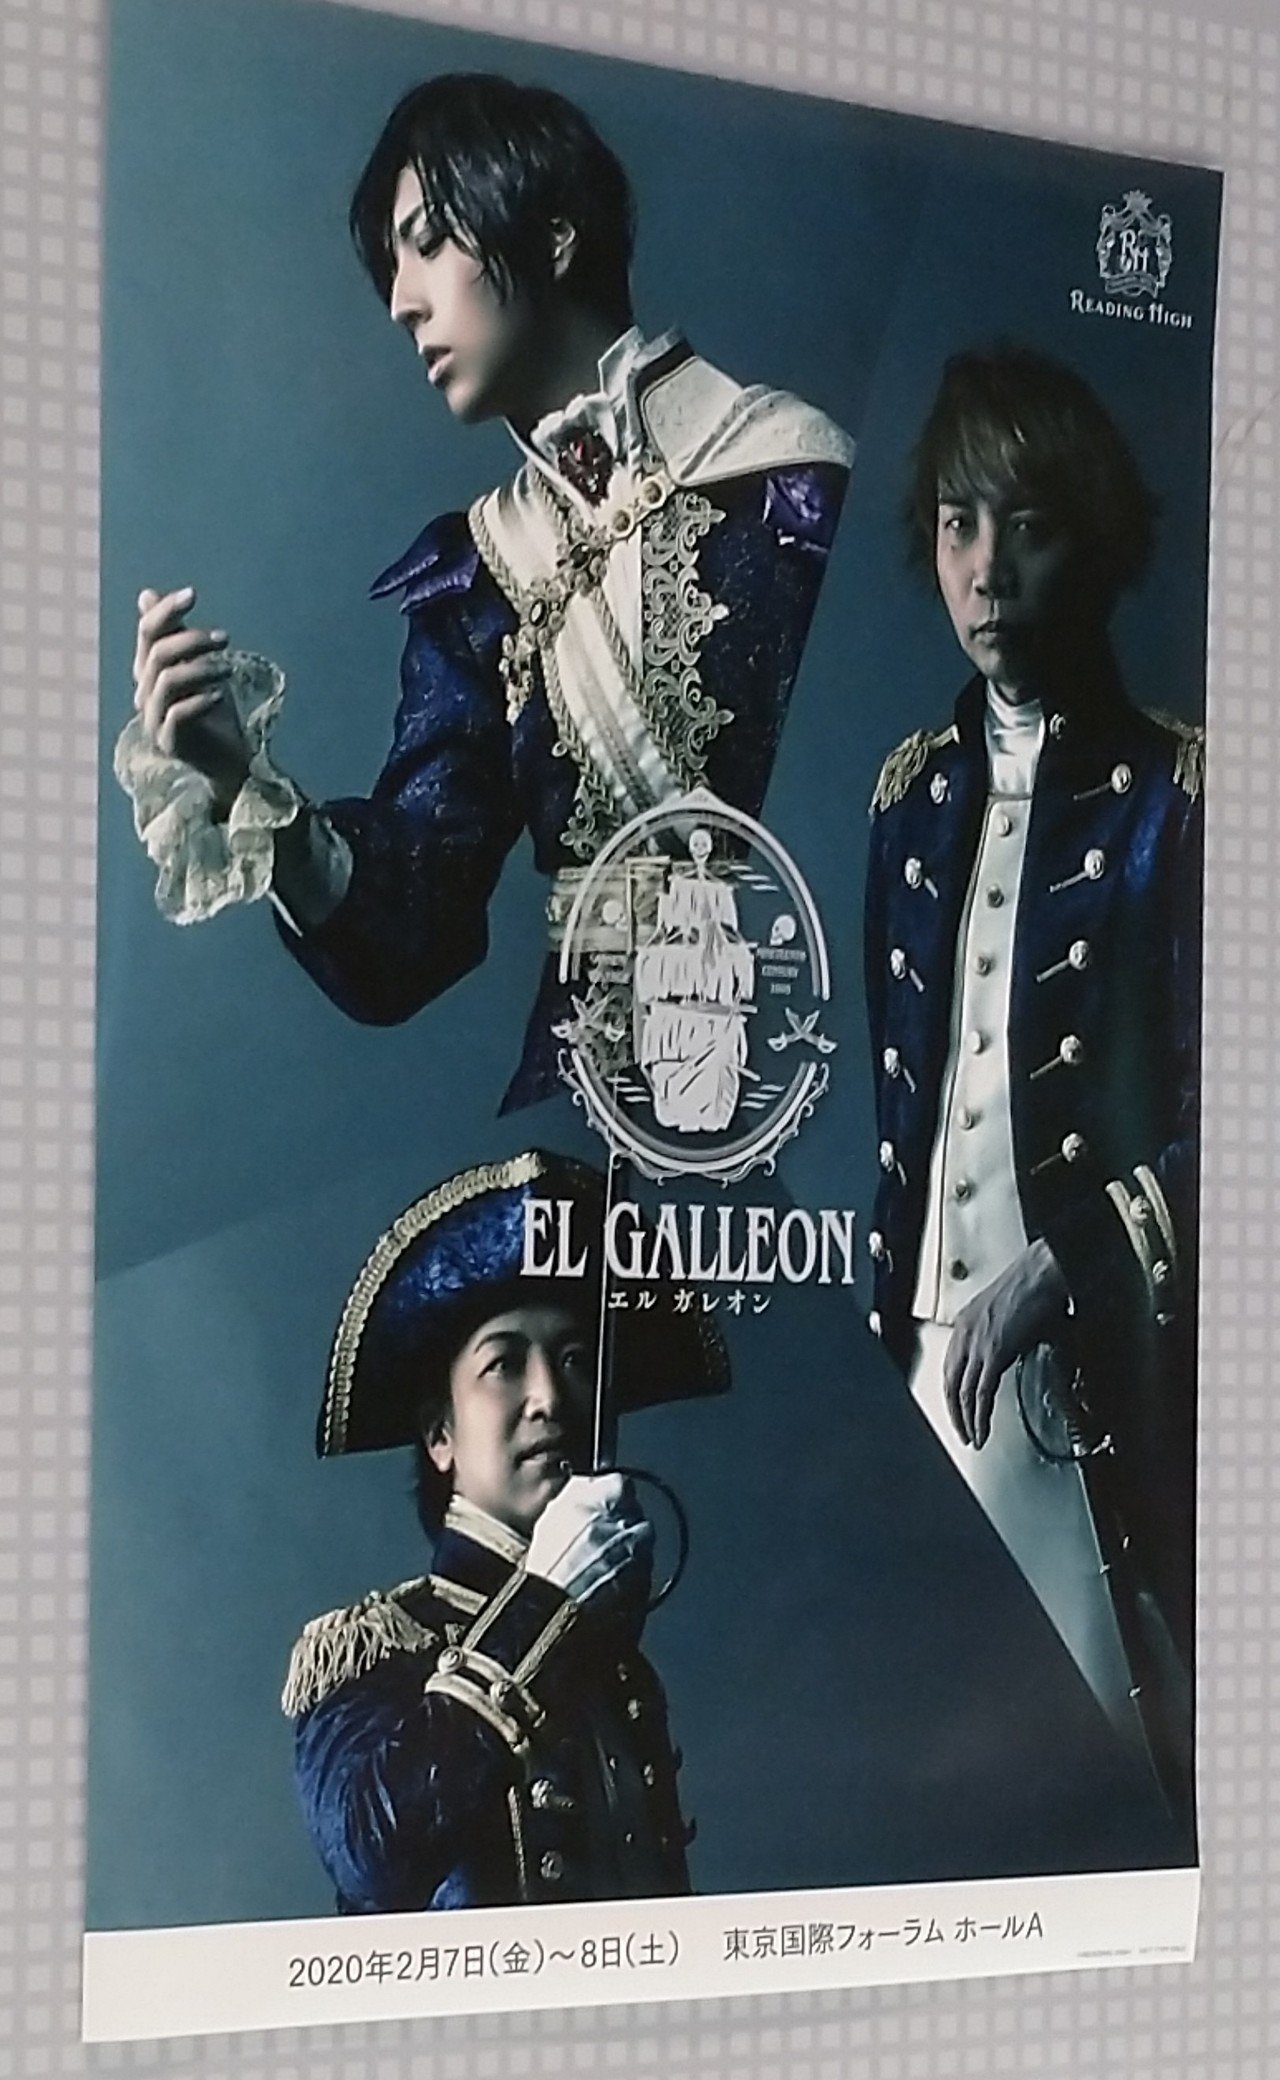 音楽朗読劇 READING HIGH 「El Galleon」+ パンフレット - DVD/ブルーレイ